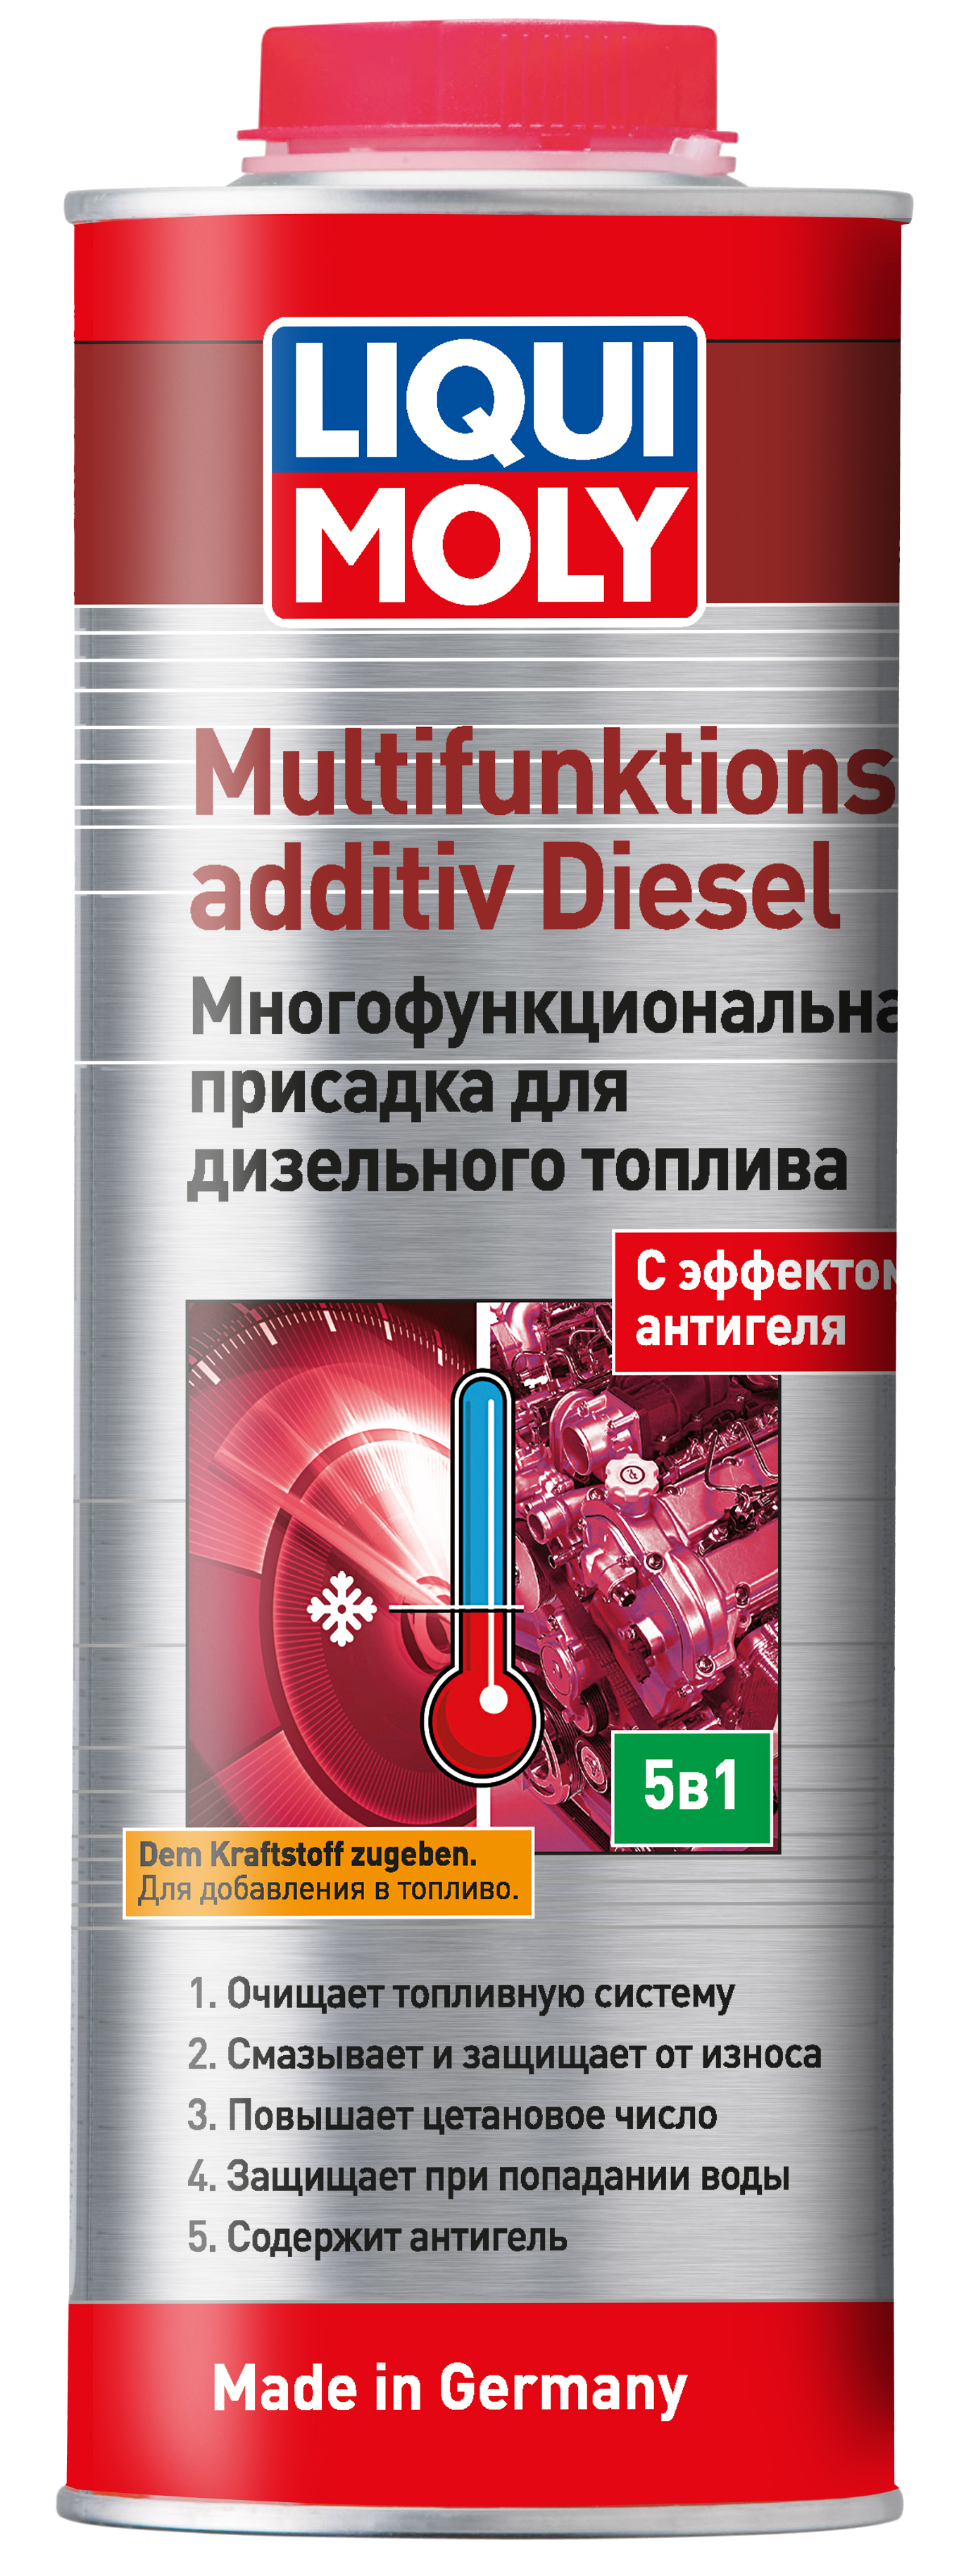 Многофункциональная присадка для дизельного топлива Liqui Moly Multifunktionsadditiv Diesel